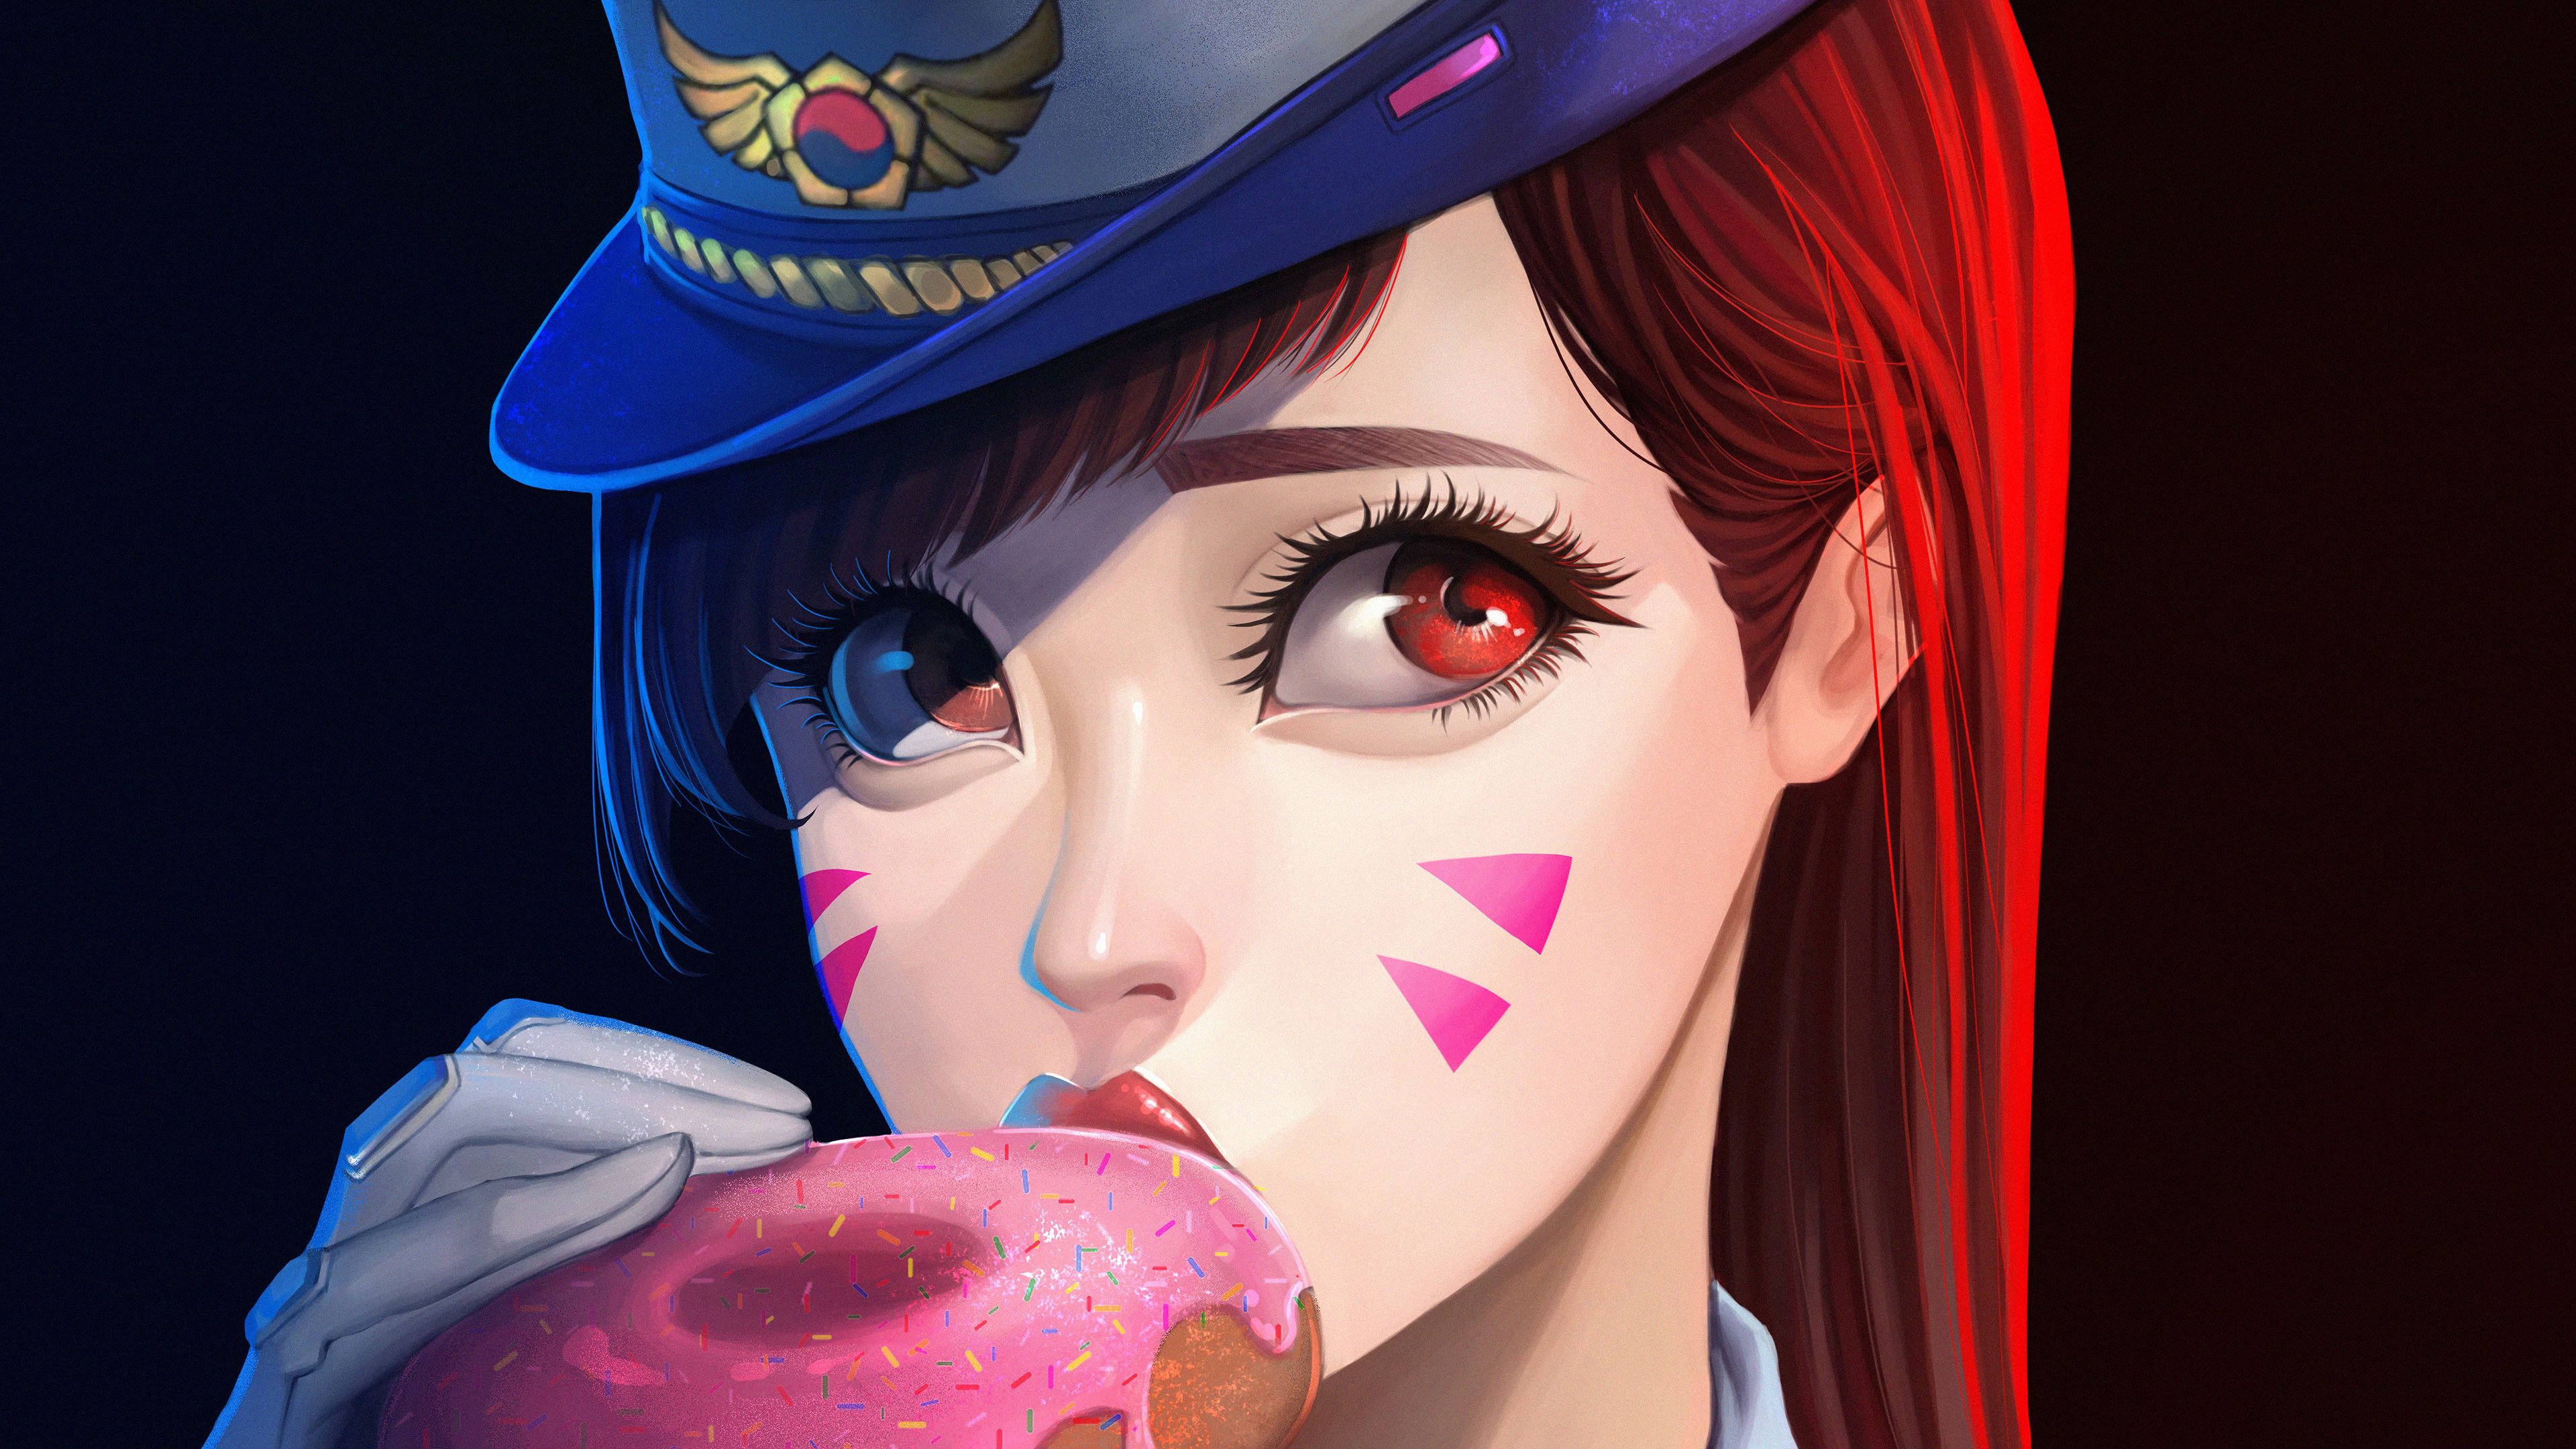 Officer Dva Donut, HD Games, 4k Wallpaper, Image, Background